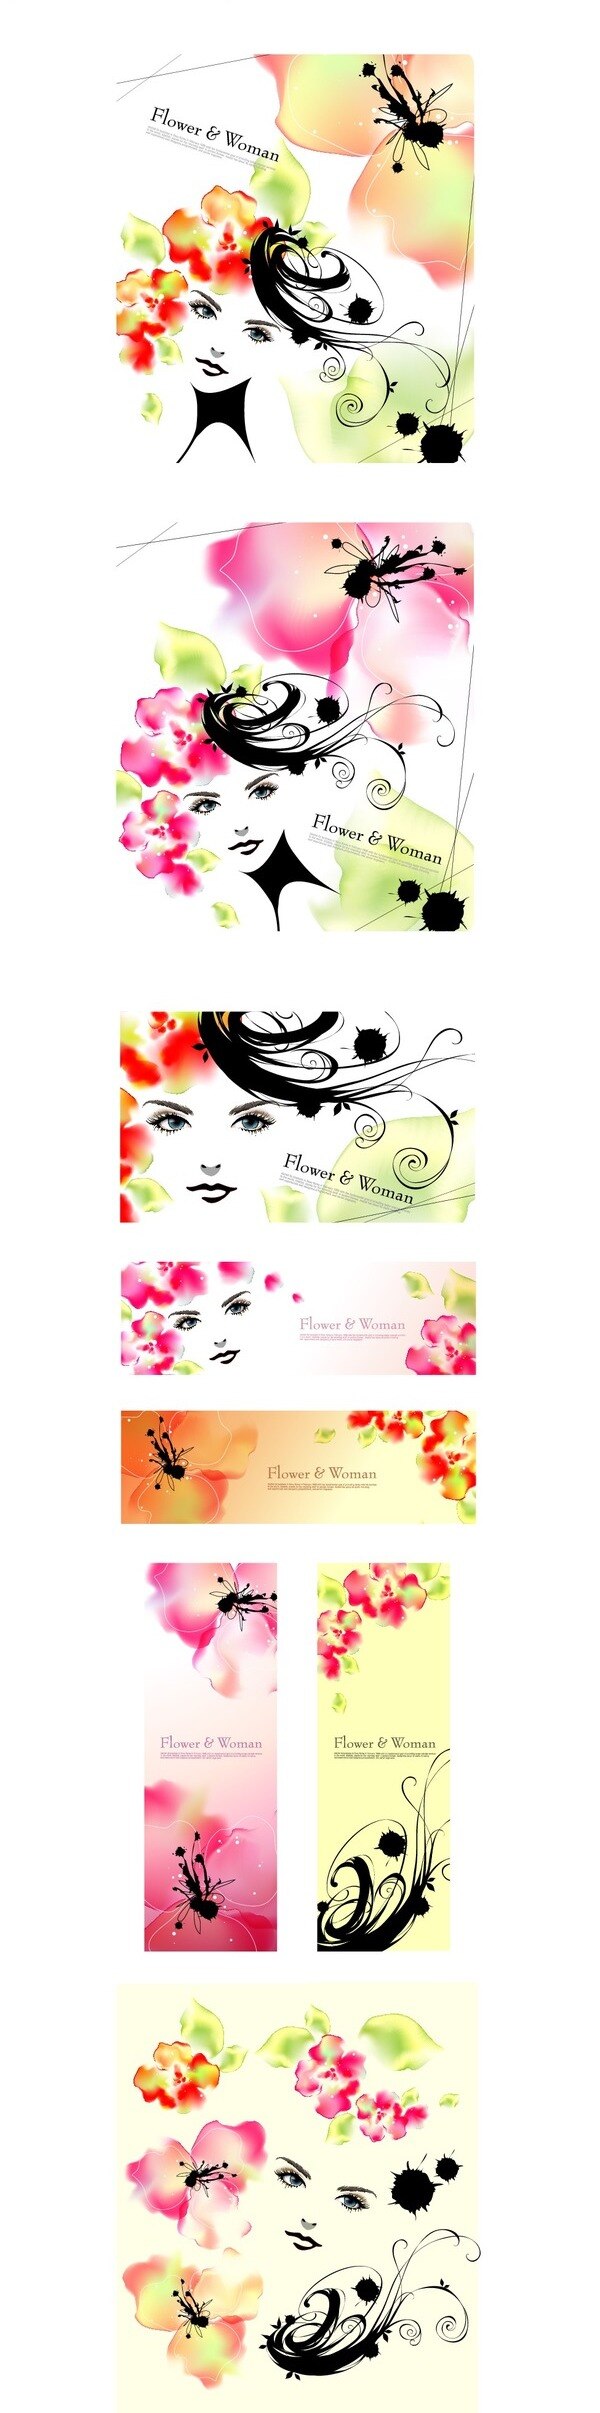 时尚 韩国 花纹 fl 背景 底图 花边 花朵 美女 模板 墨迹 设计稿 头像 叶子 图案 素材元素 源文件 矢量图